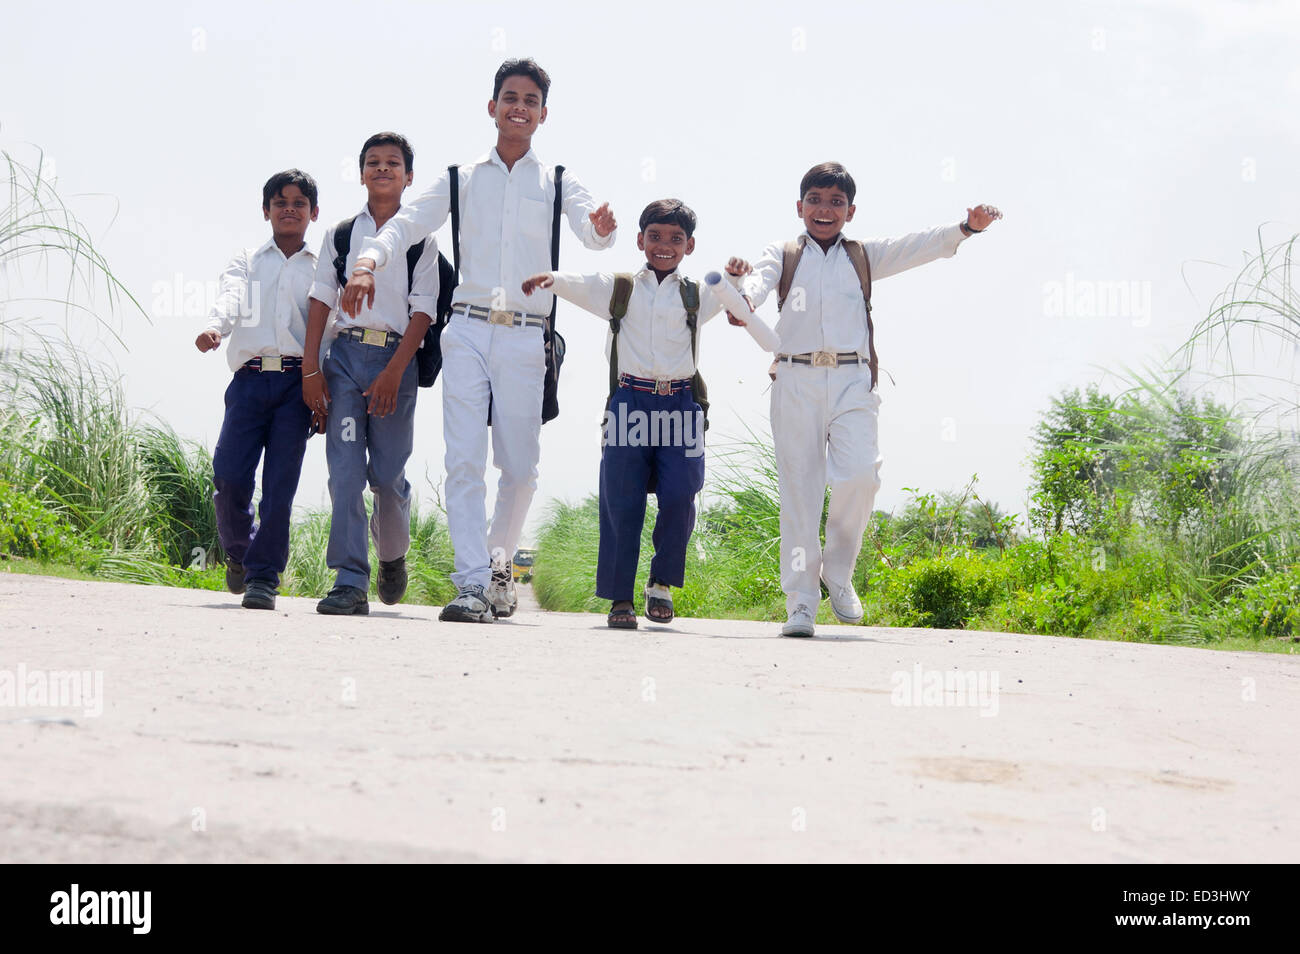 Los niños estudiantes de la escuela rural indio caminando Foto de stock